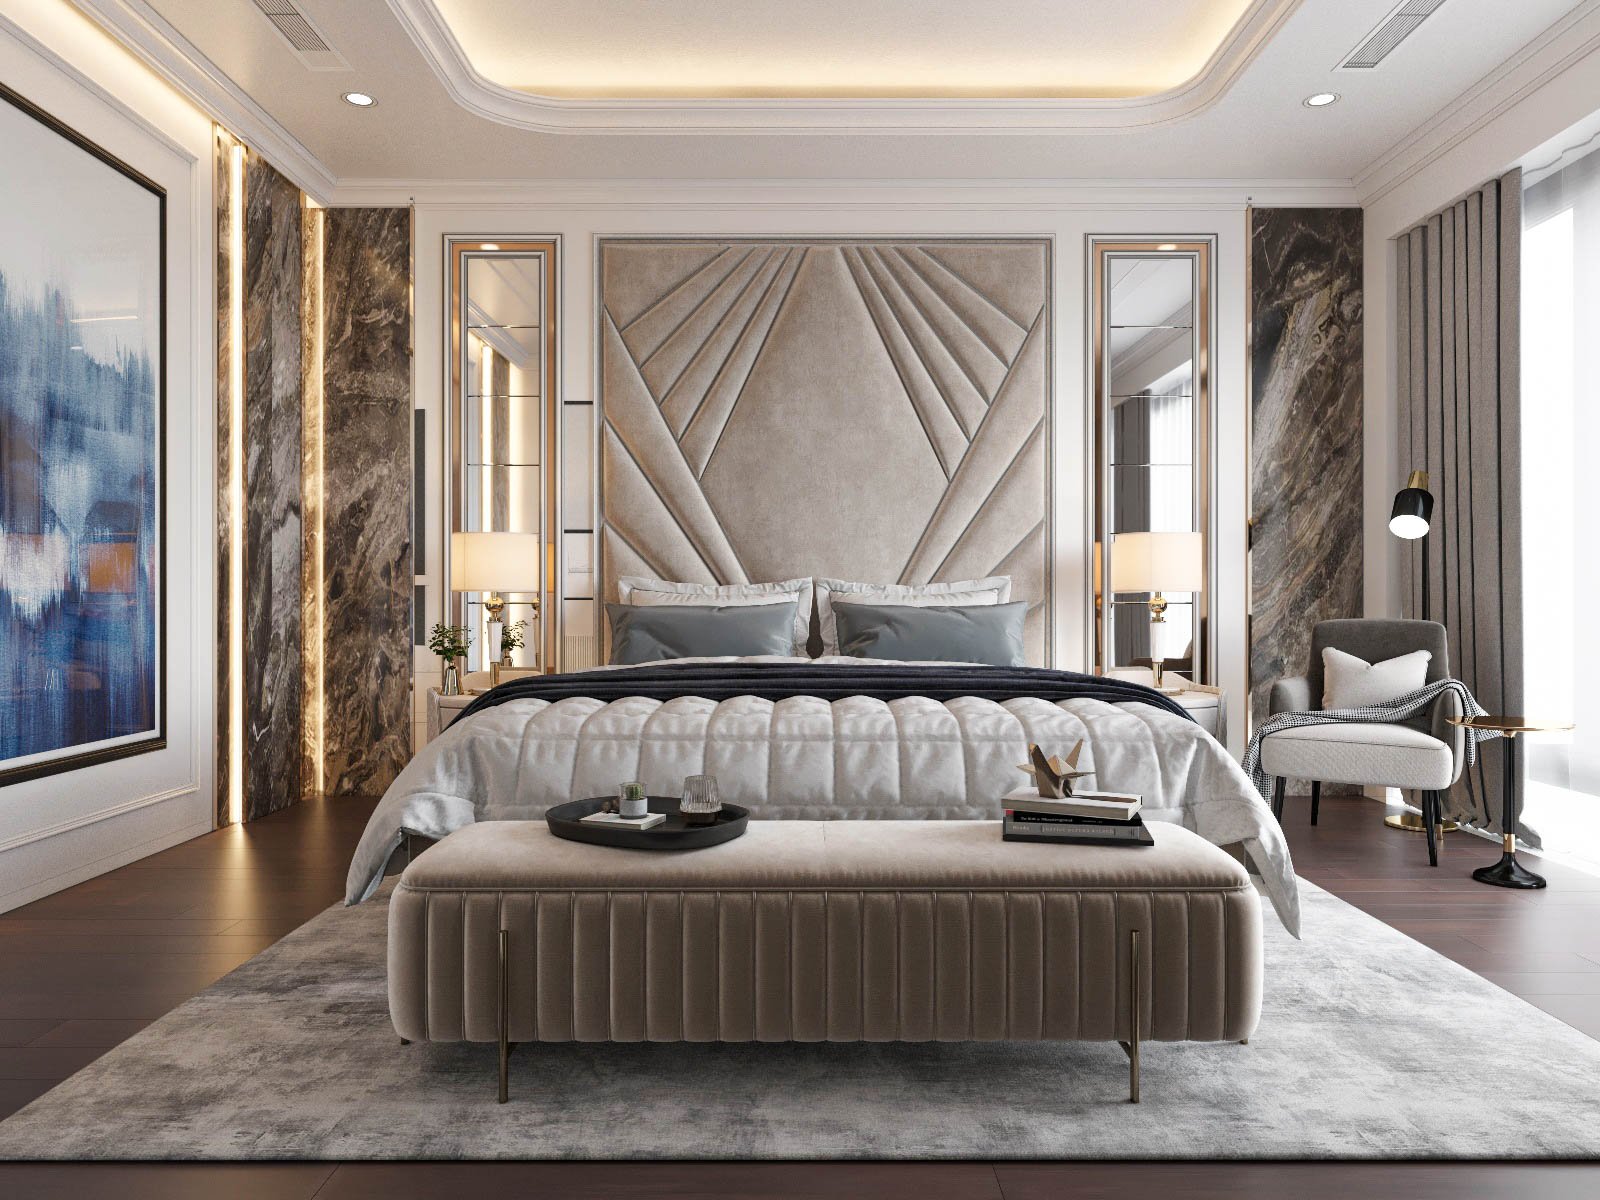 Phòng ngủ master này là niềm mơ ước của bao người. Sử dụng trọn bộ nội thất cao cấp màu trung tính hài hòa, căn phòng toát lên vẻ sang trọng, thanh lịch và góp phần thể hiện rõ khí chất của chủ sở hữu.